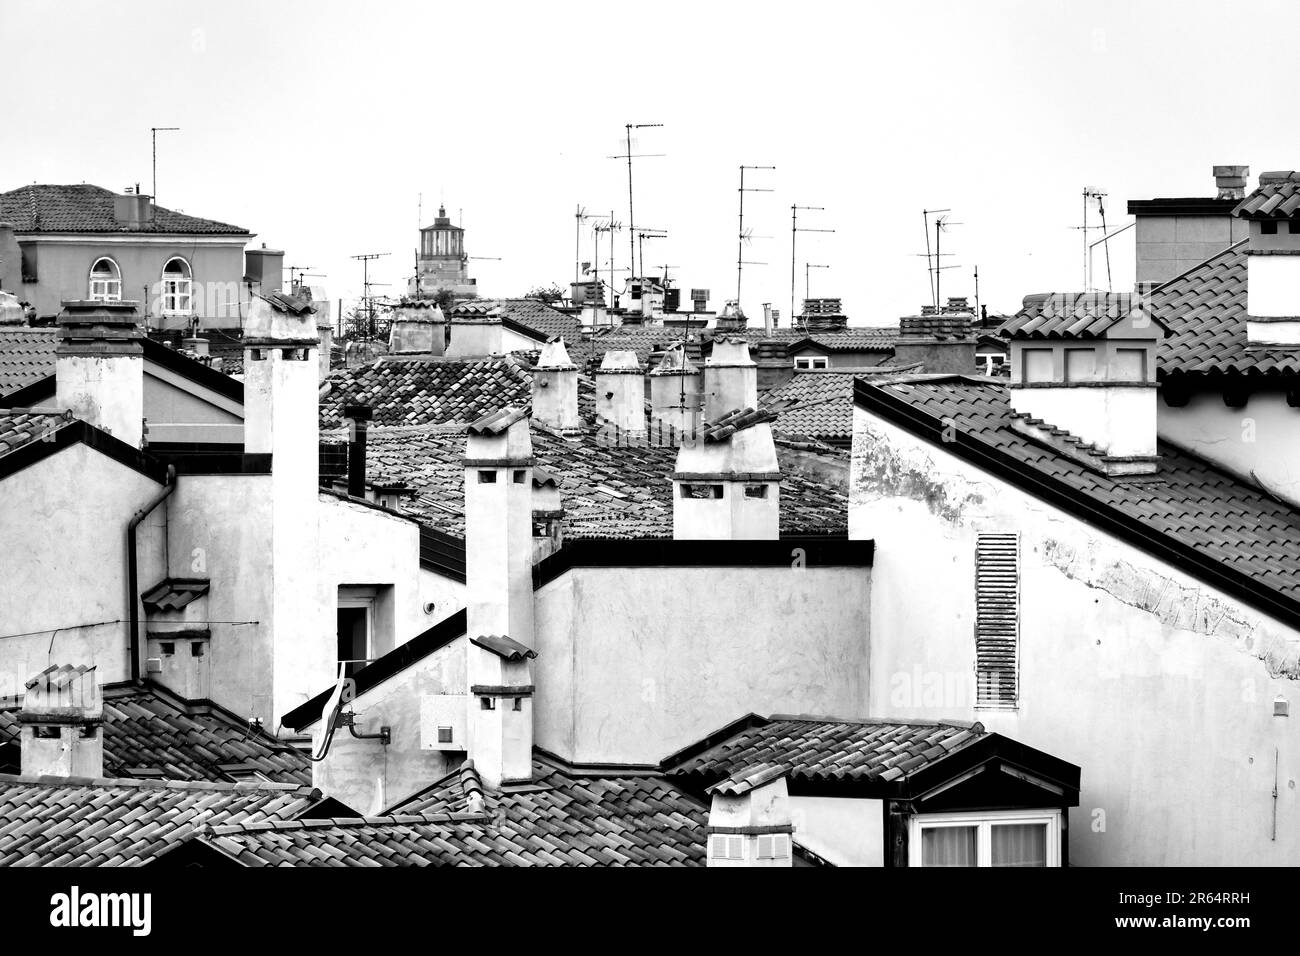 Vue sur les toits du centre historique de Trieste, Italie Banque D'Images